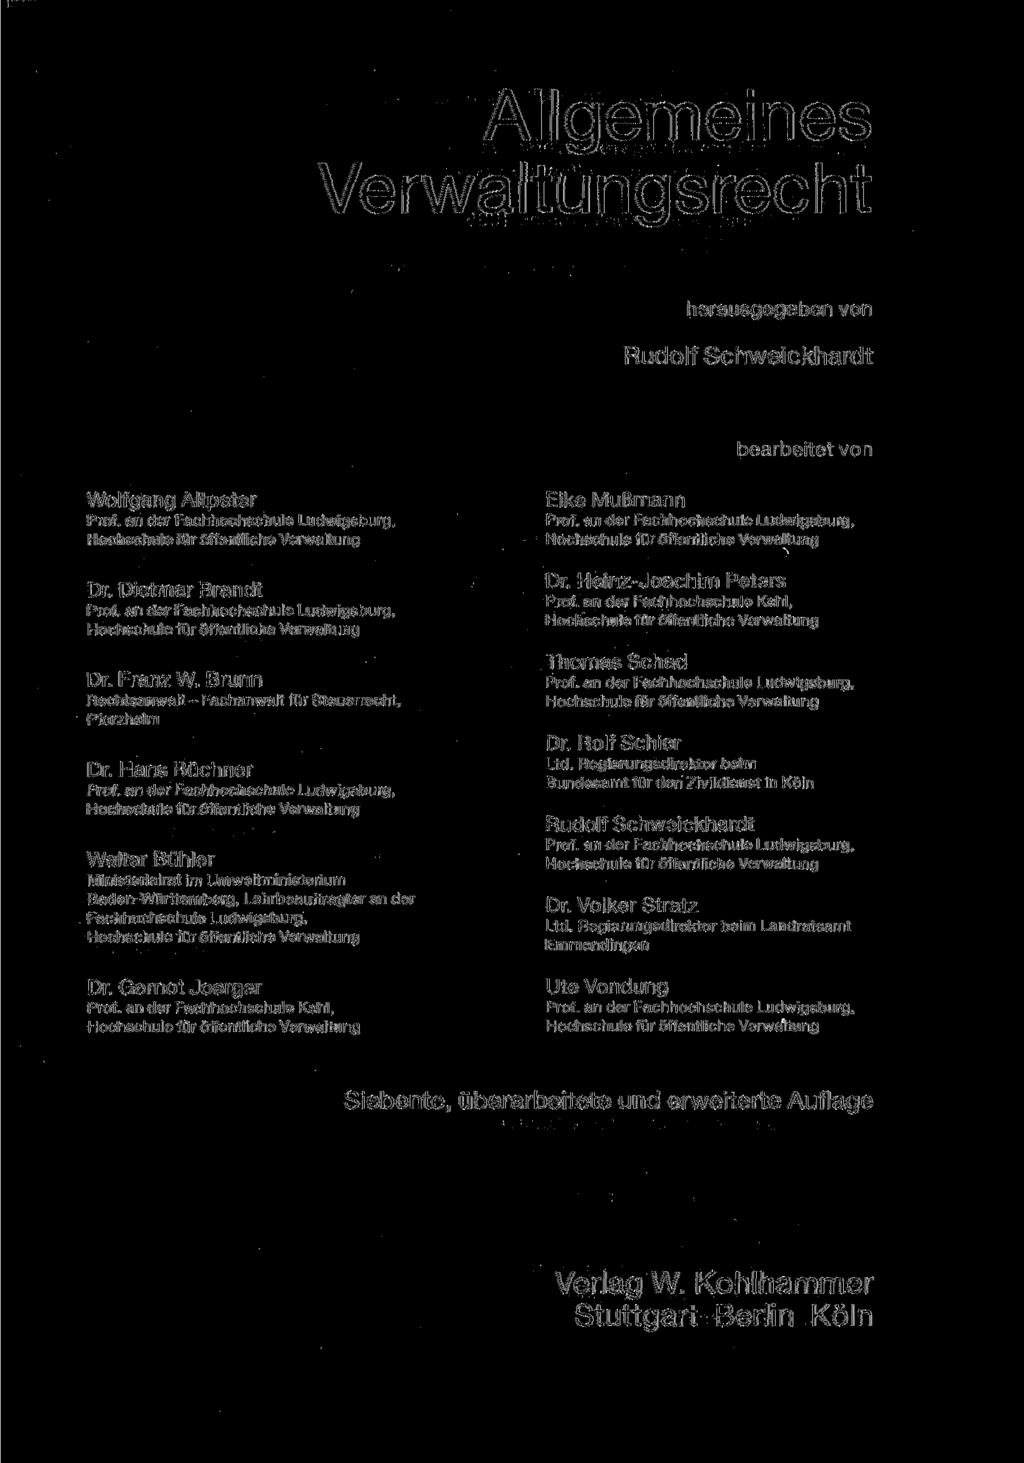 Allgemeines Verwaltungsrecht herausgegeben von Rudolf Schweickhardt bearbeitet von Wolfgang Altpeter Dr. Dietmar Brandt Dr. Franz W. Brunn Rechtsanwalt - Fachanwalt für Steuerrecht, Pforzheim Dr.